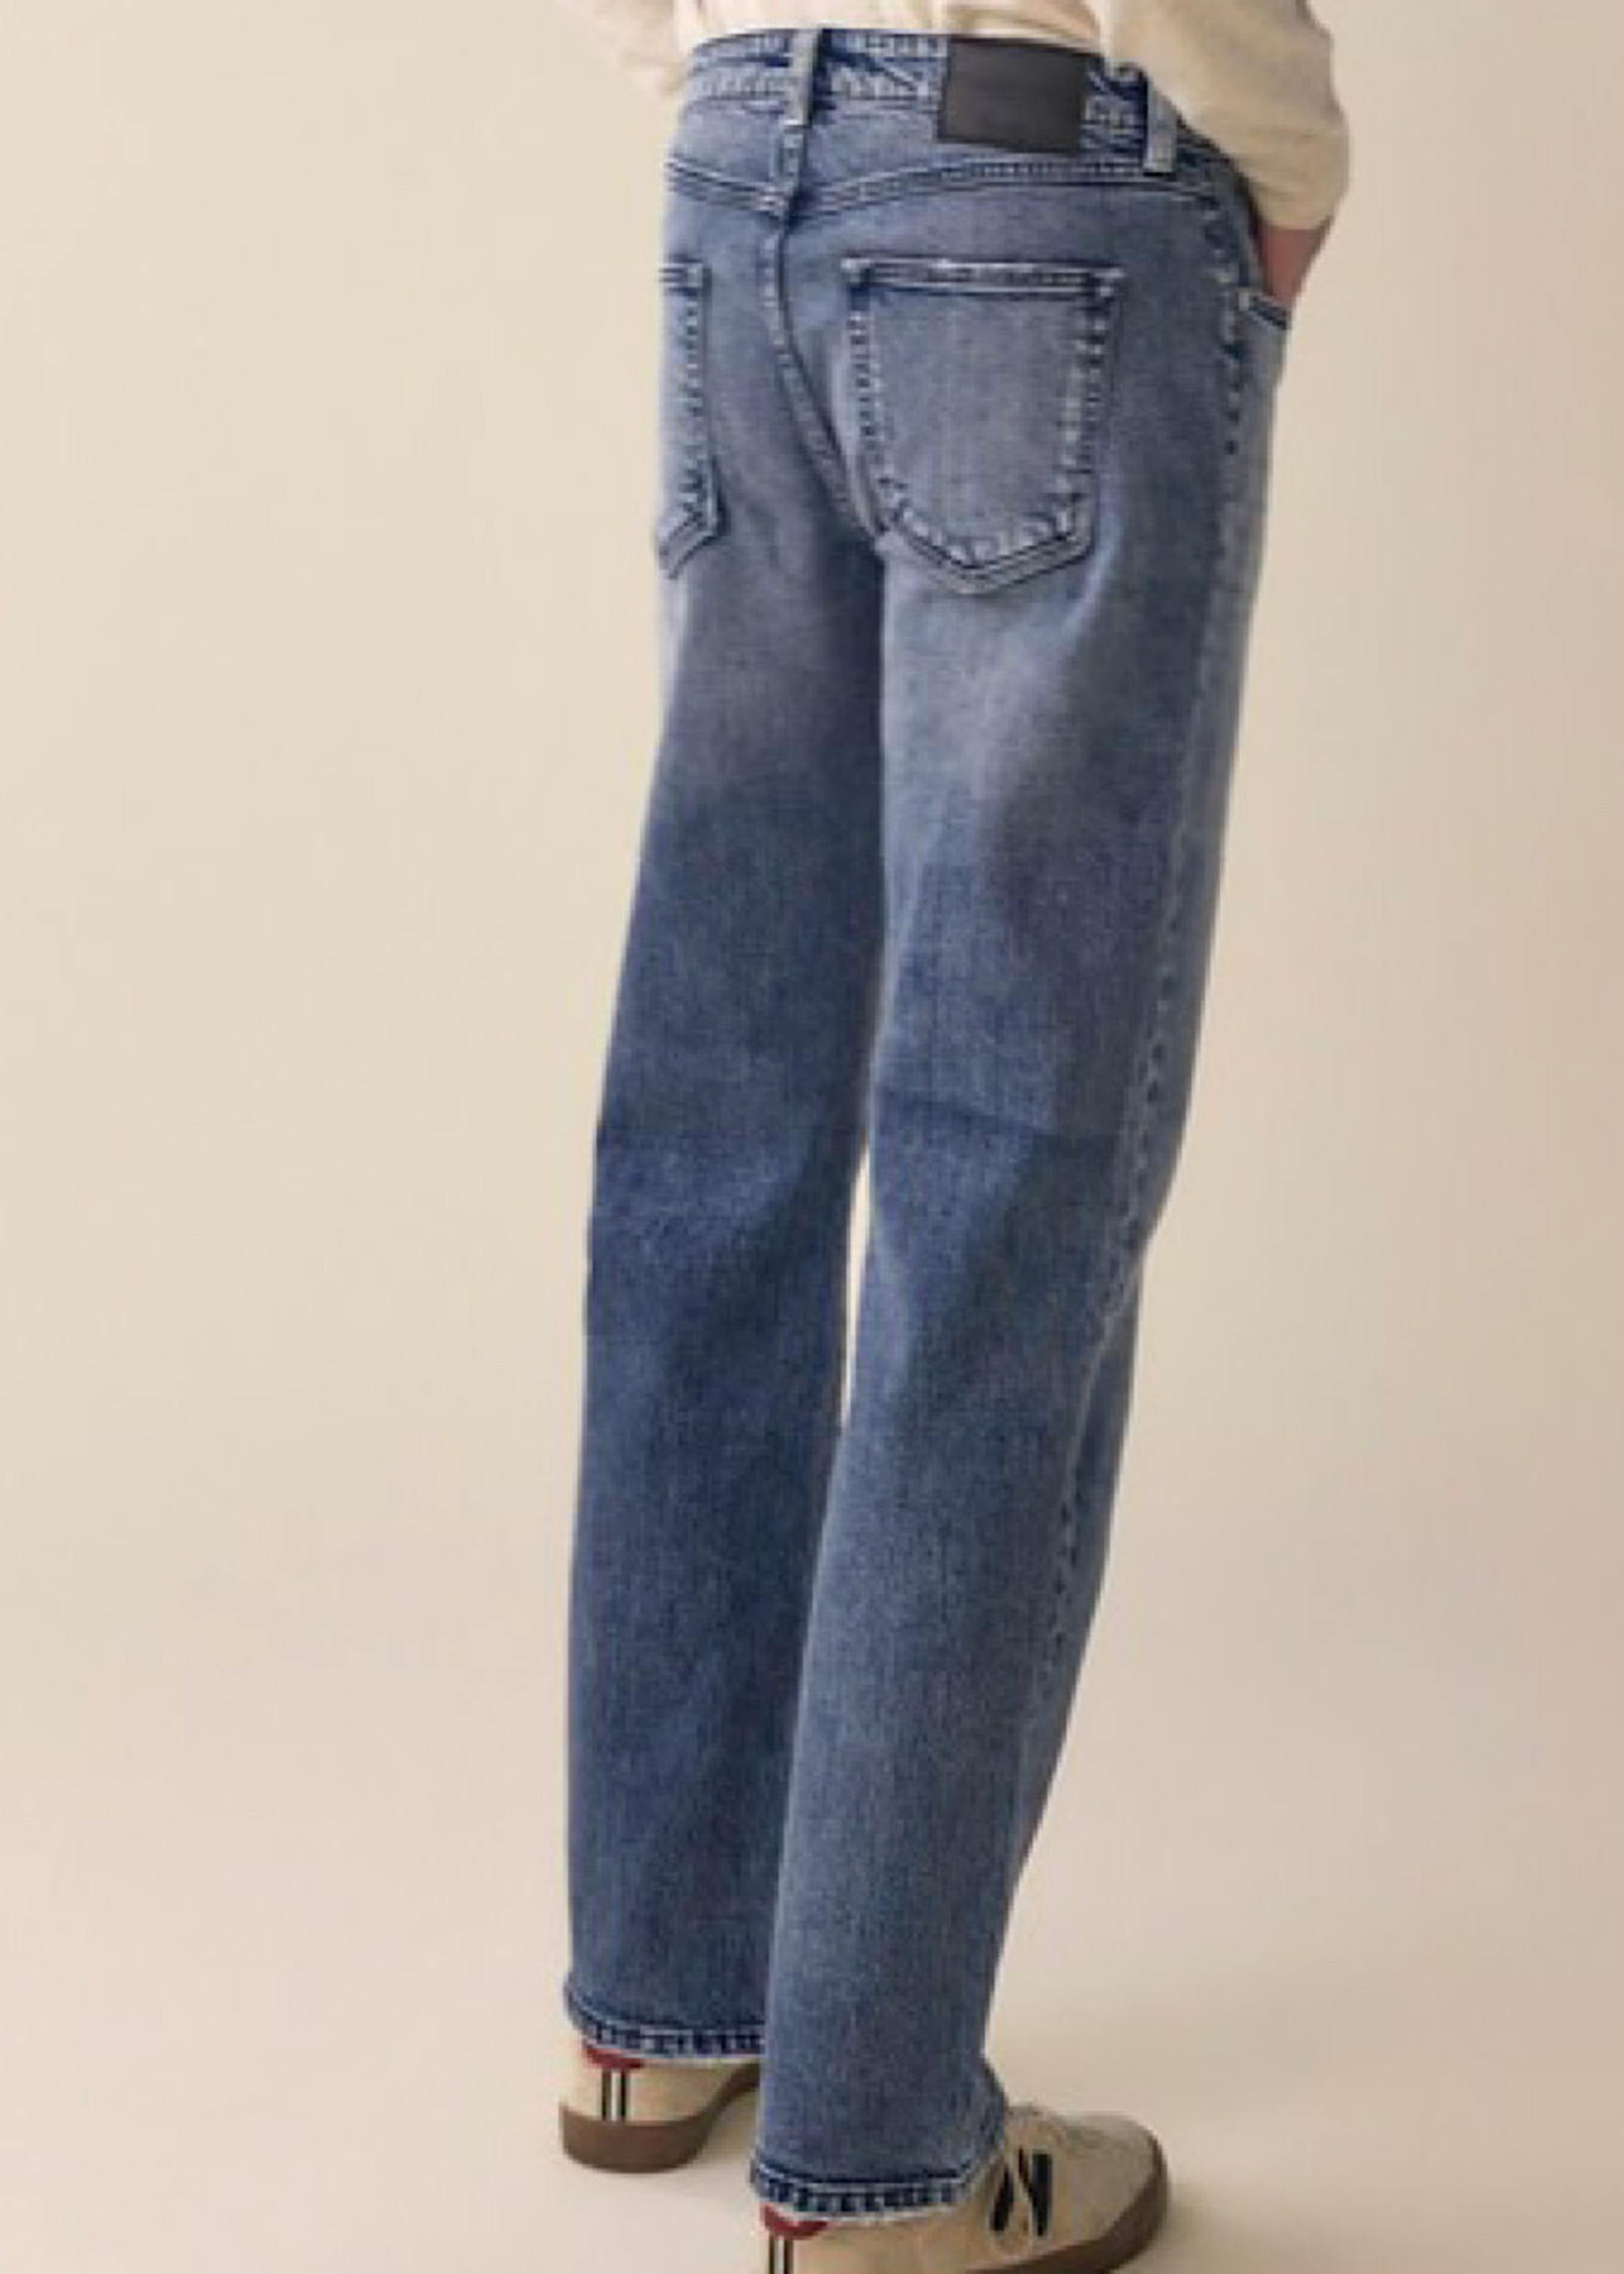 KanCan KanCan Men's Straight Jeans KM1022M